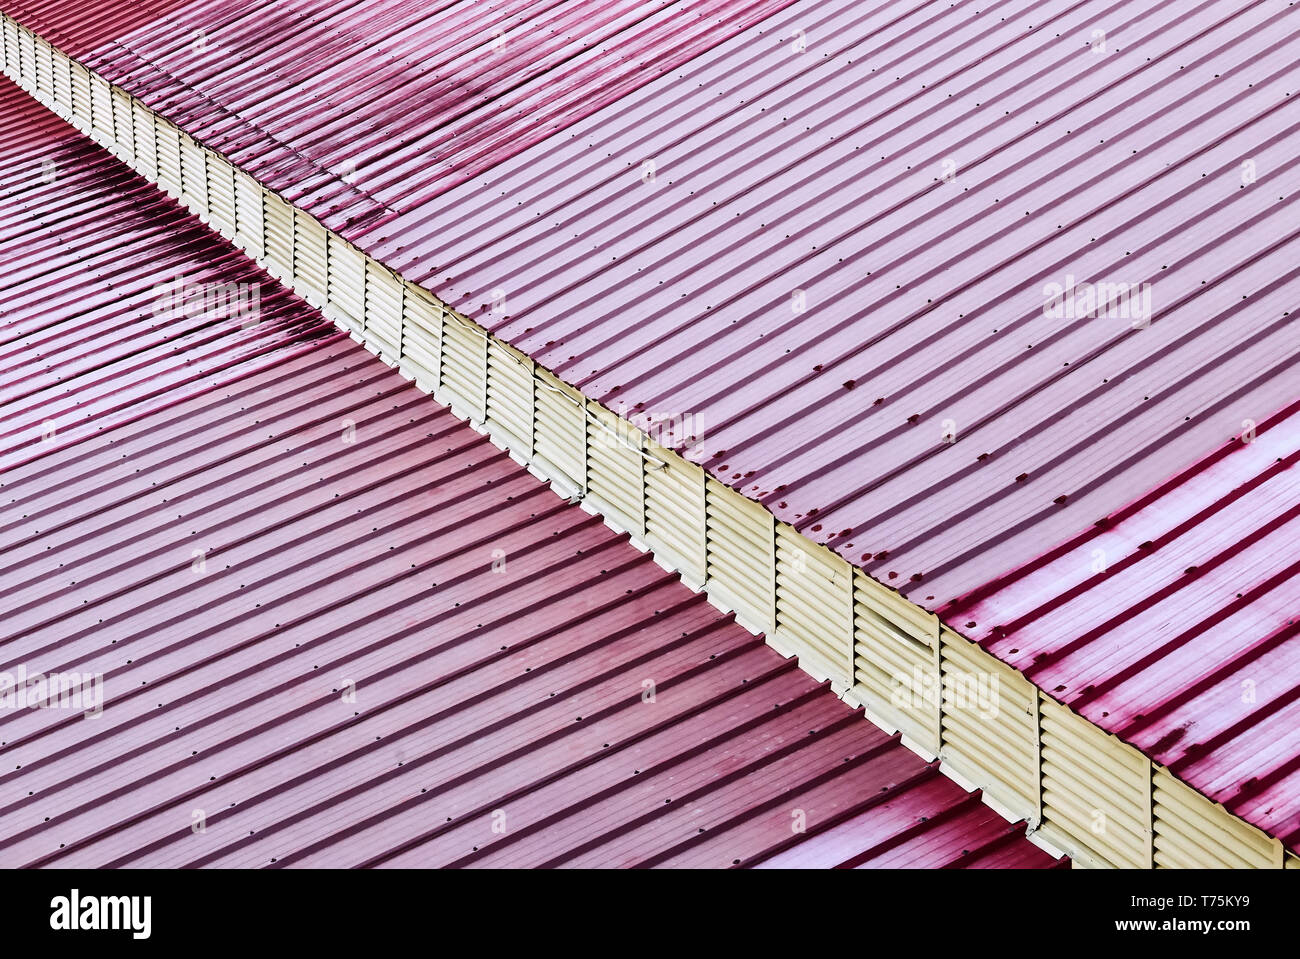 Vista detallada de un techo hecho de hojas de metal de color rojo. Un voladizo diagonal da una impresión tridimensional. Foto de stock